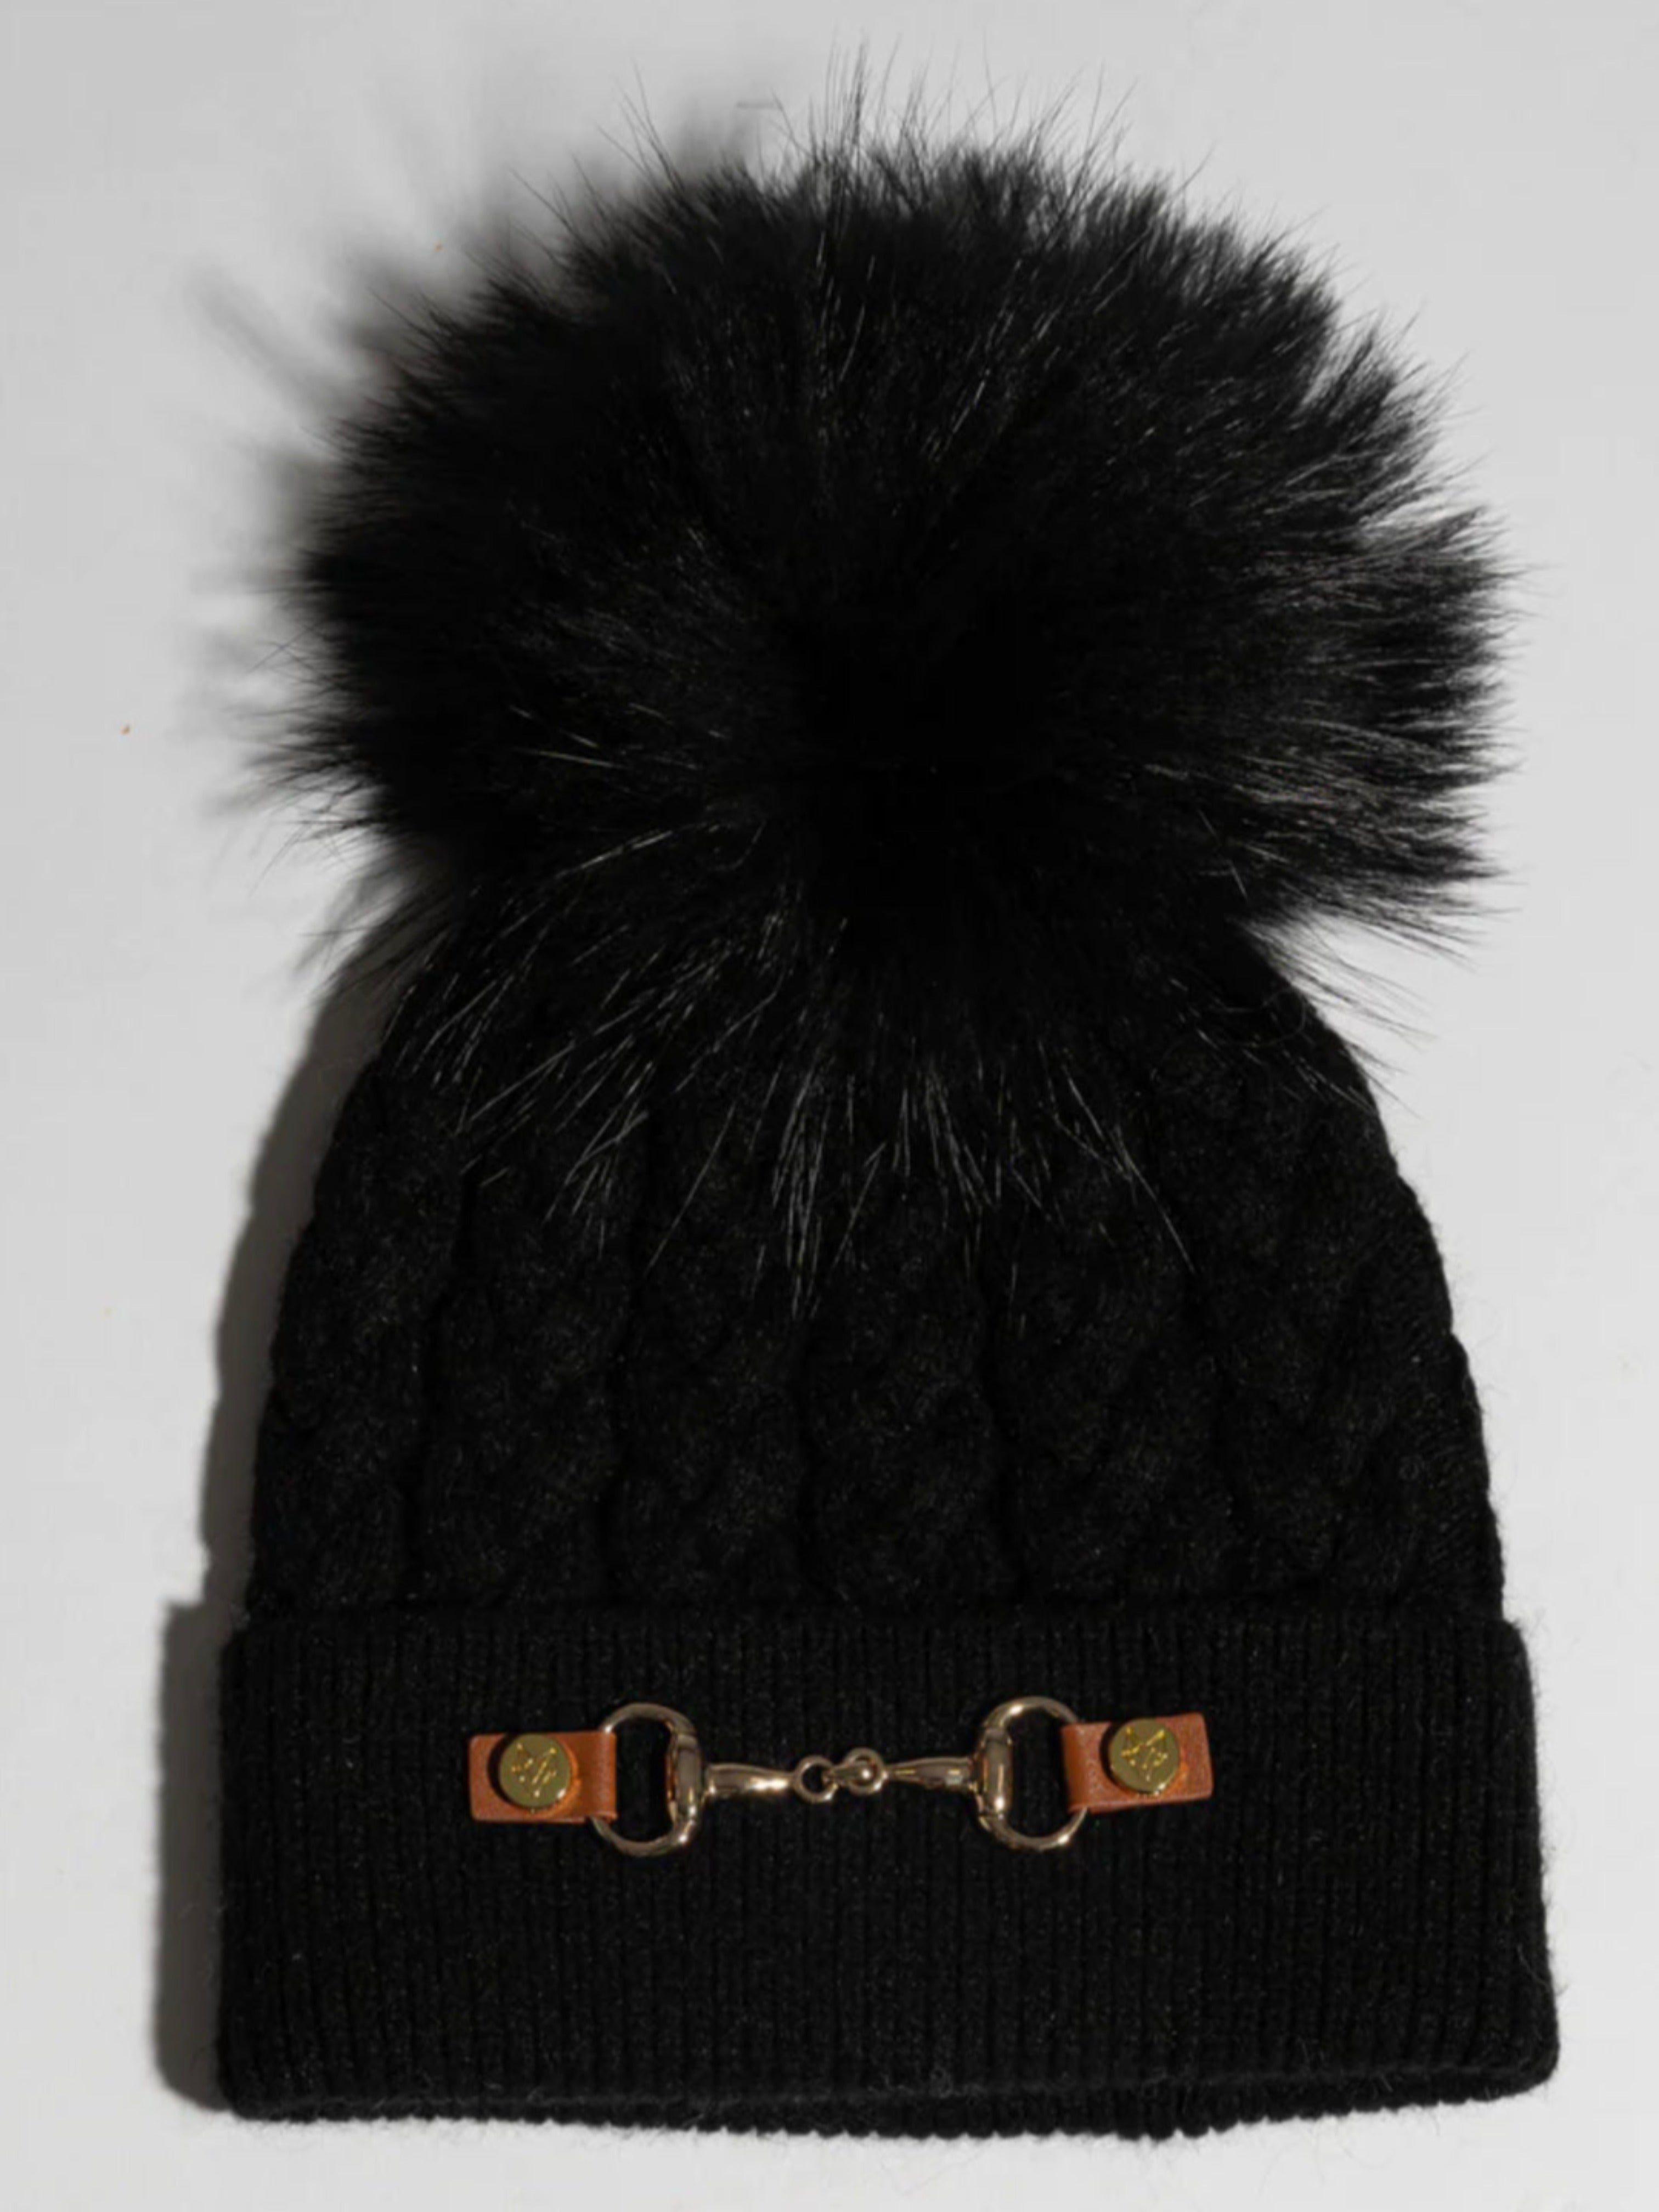 black pom pom hat racoon detachable fur pom pom  with horse bit detail 